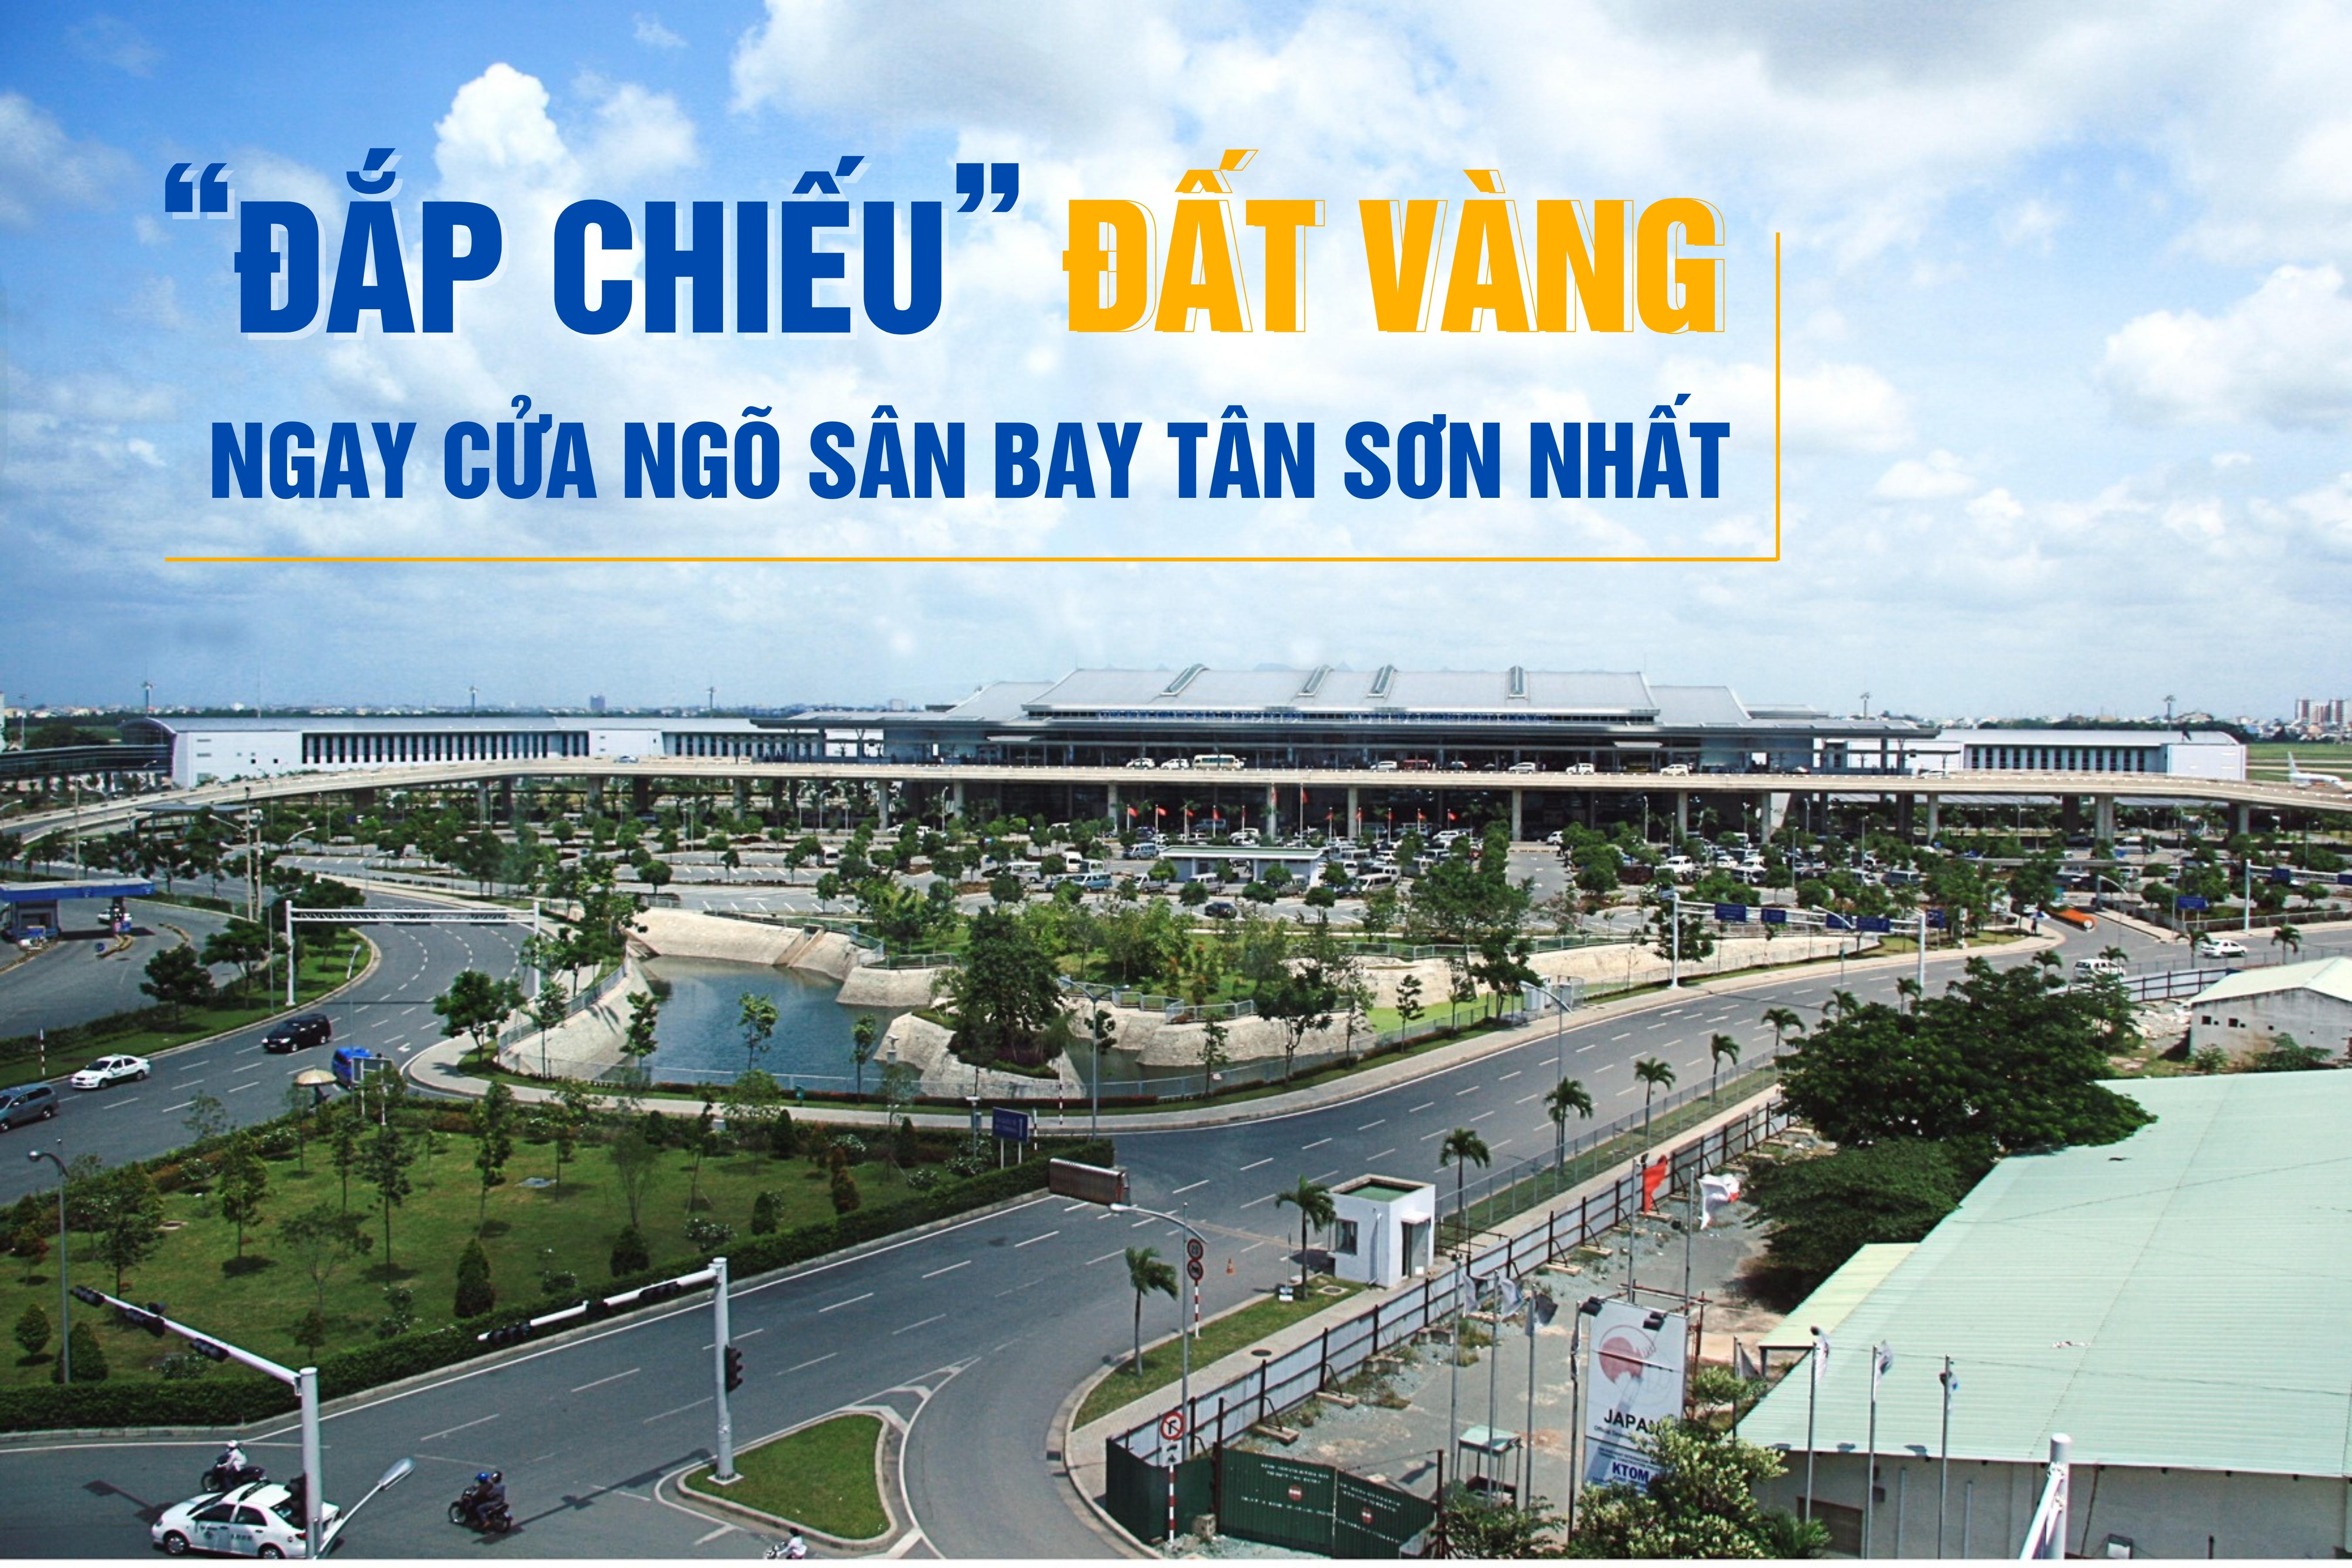 “Đắp chiếu” đất vàng ngay cửa ngõ sân bay Tân Sơn Nhất - Ảnh 1